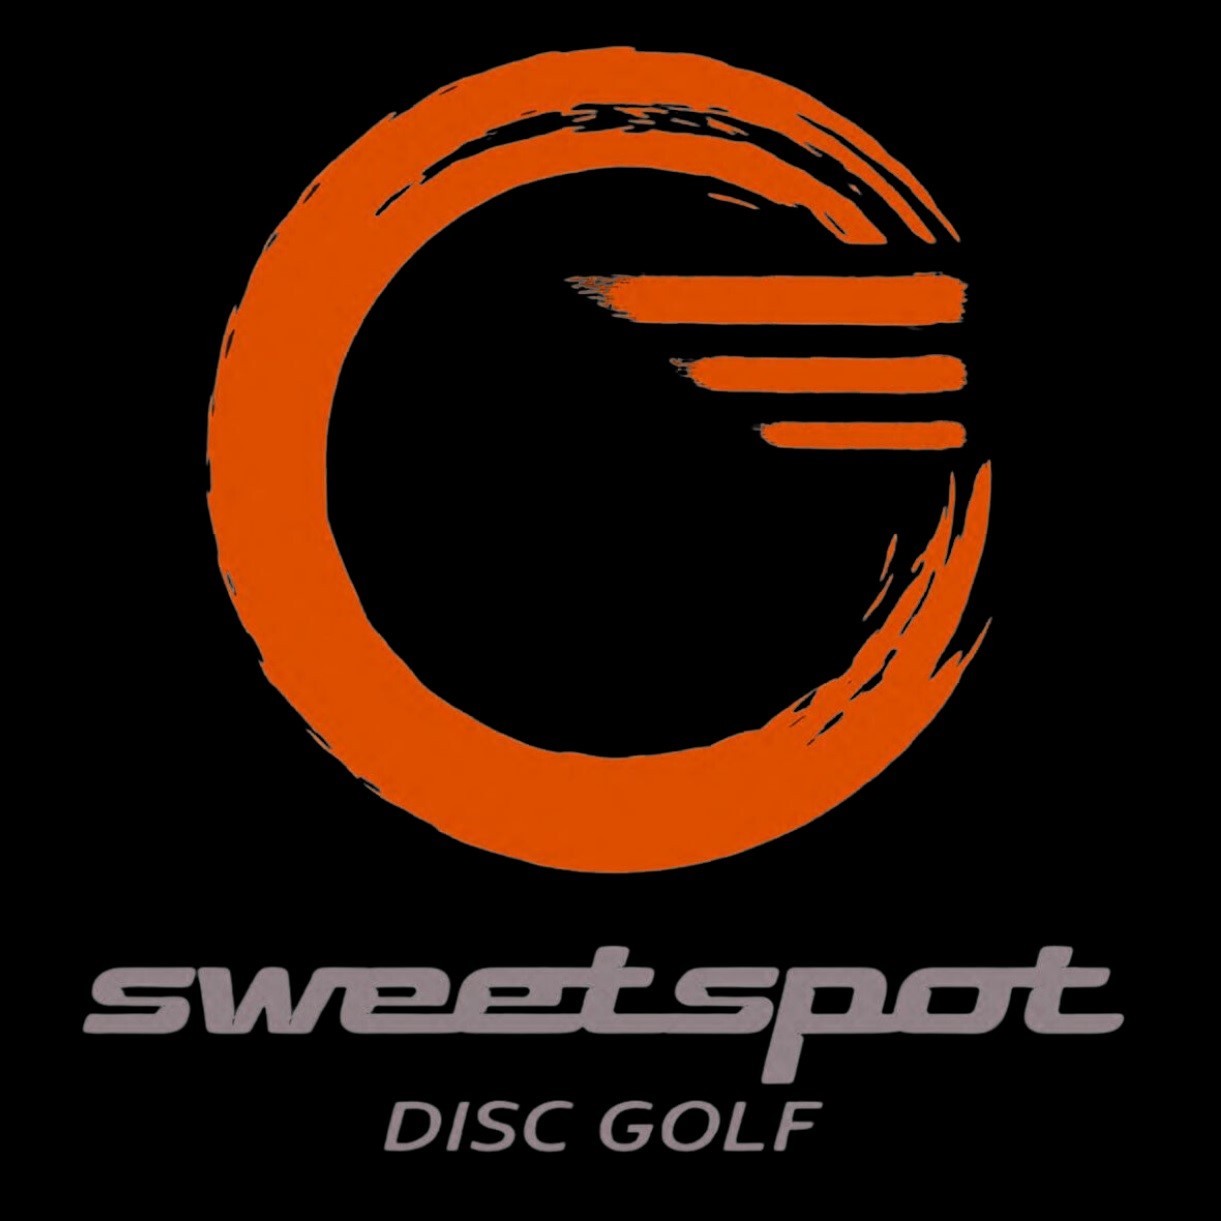 Sweet Spot Disc Golf